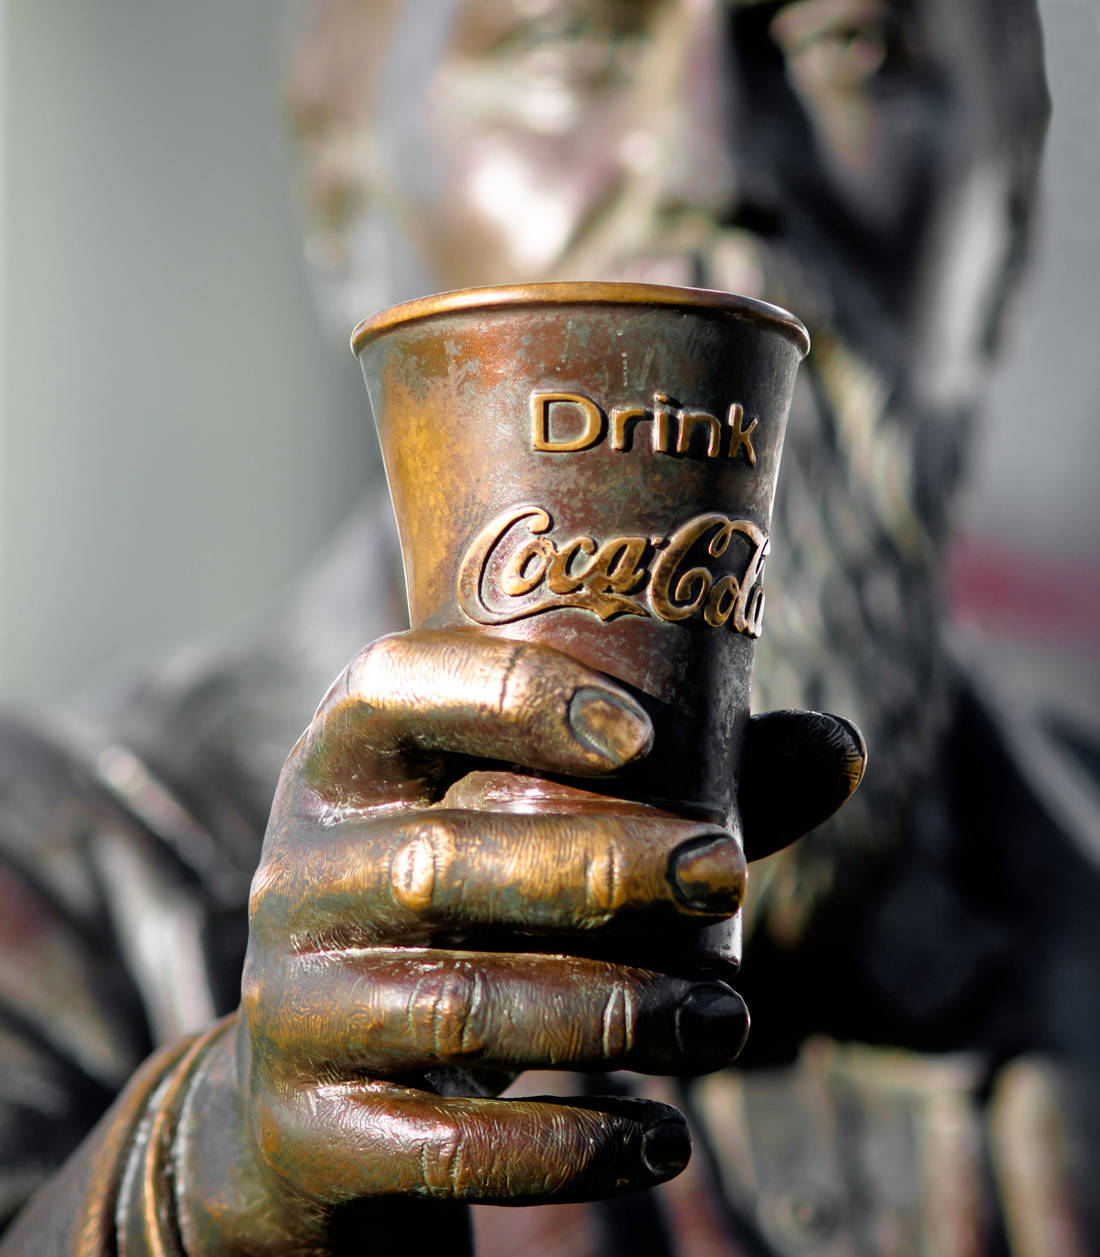 Η άγνωστη ιστορία γύρω από την ονομασία της Coca Cola - ΠΕΡΙΕΡΓΑ